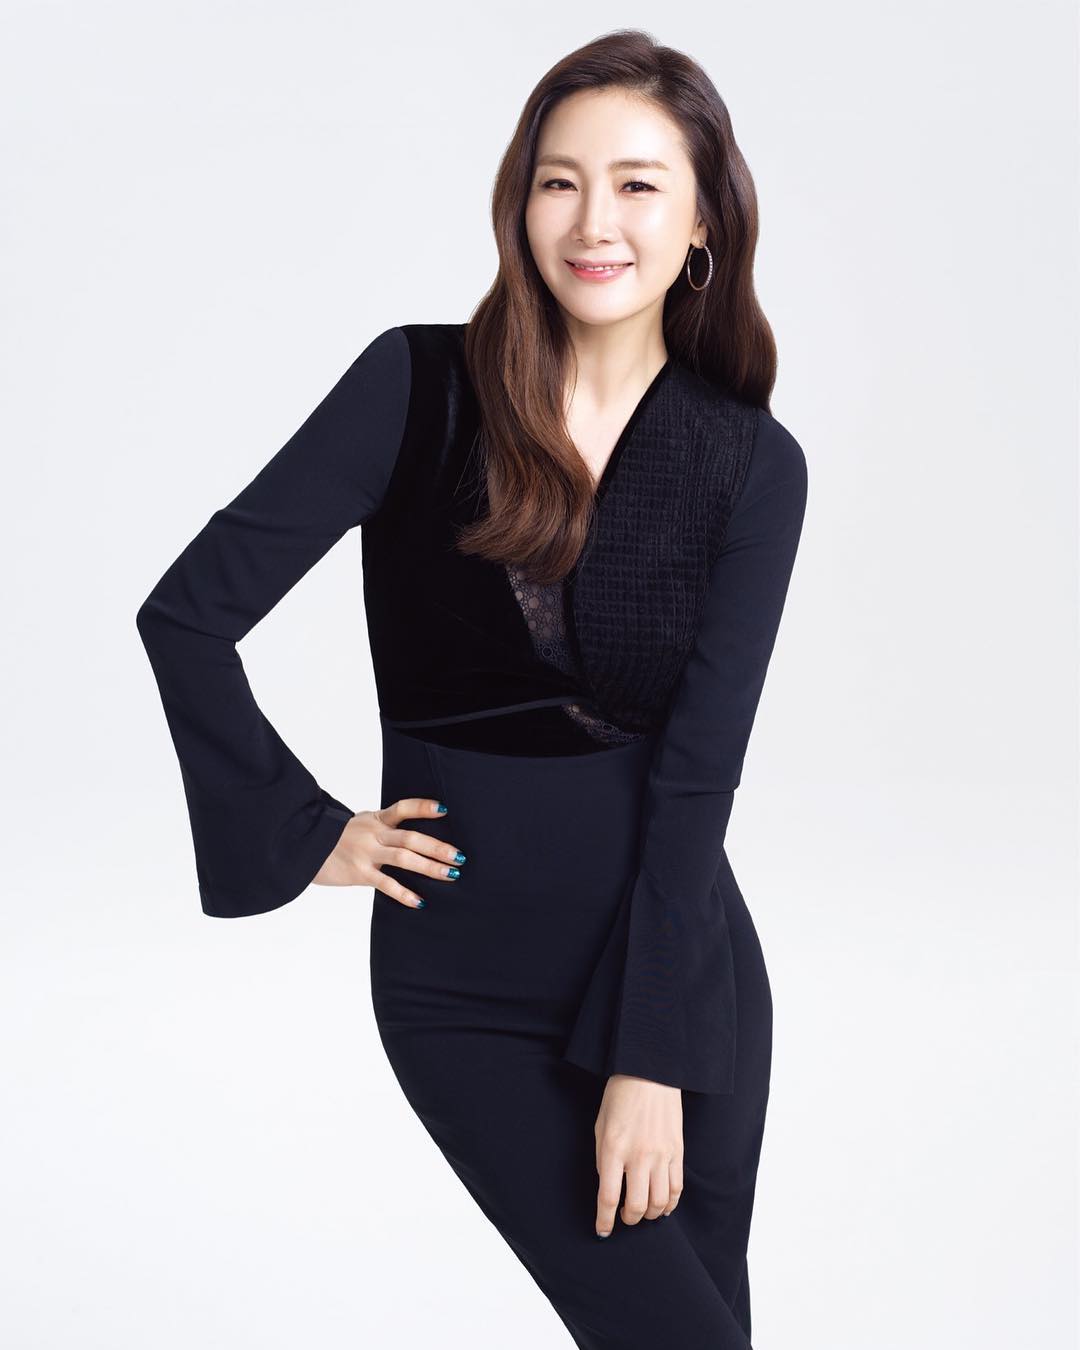 Choi Ji woo South Korean actress 12